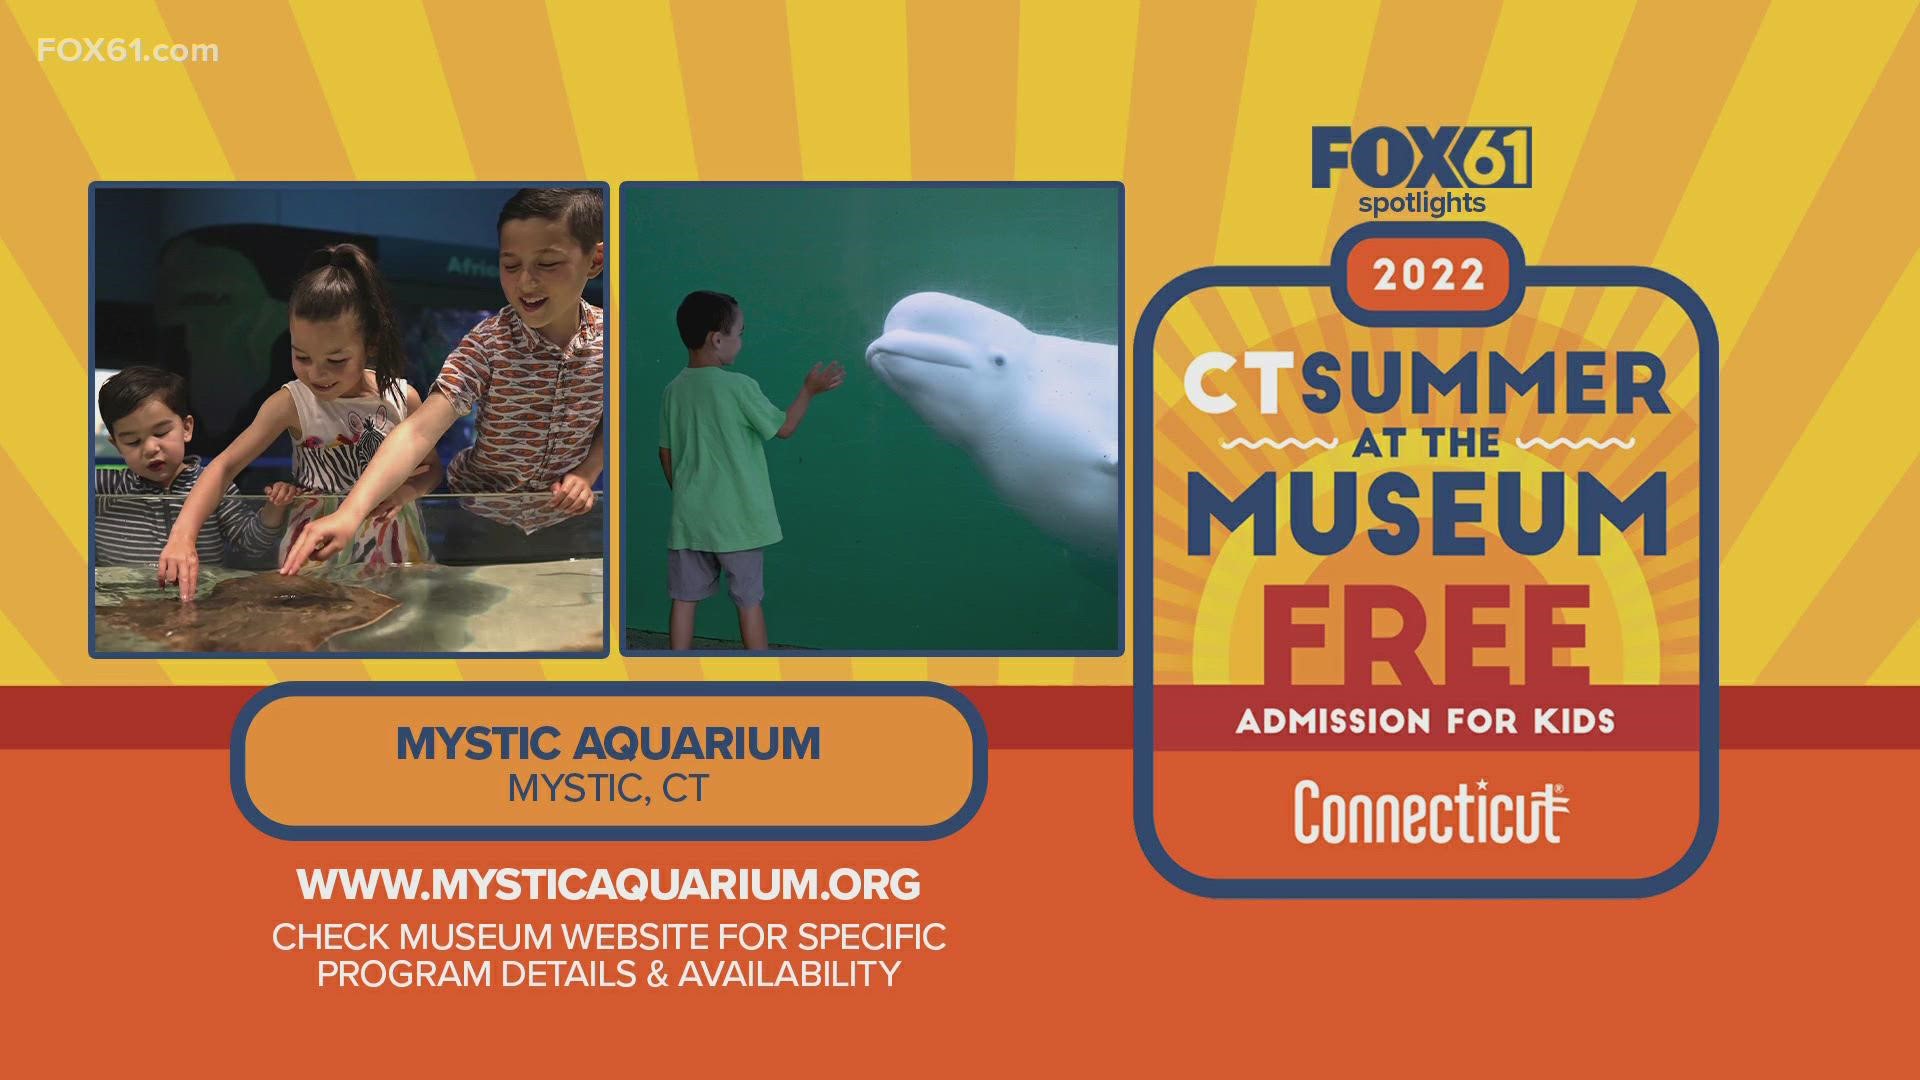 18岁及以下的儿童可以与康涅狄格州居民的成年人一起免费参观神秘水族馆。它将持续到9月5日。